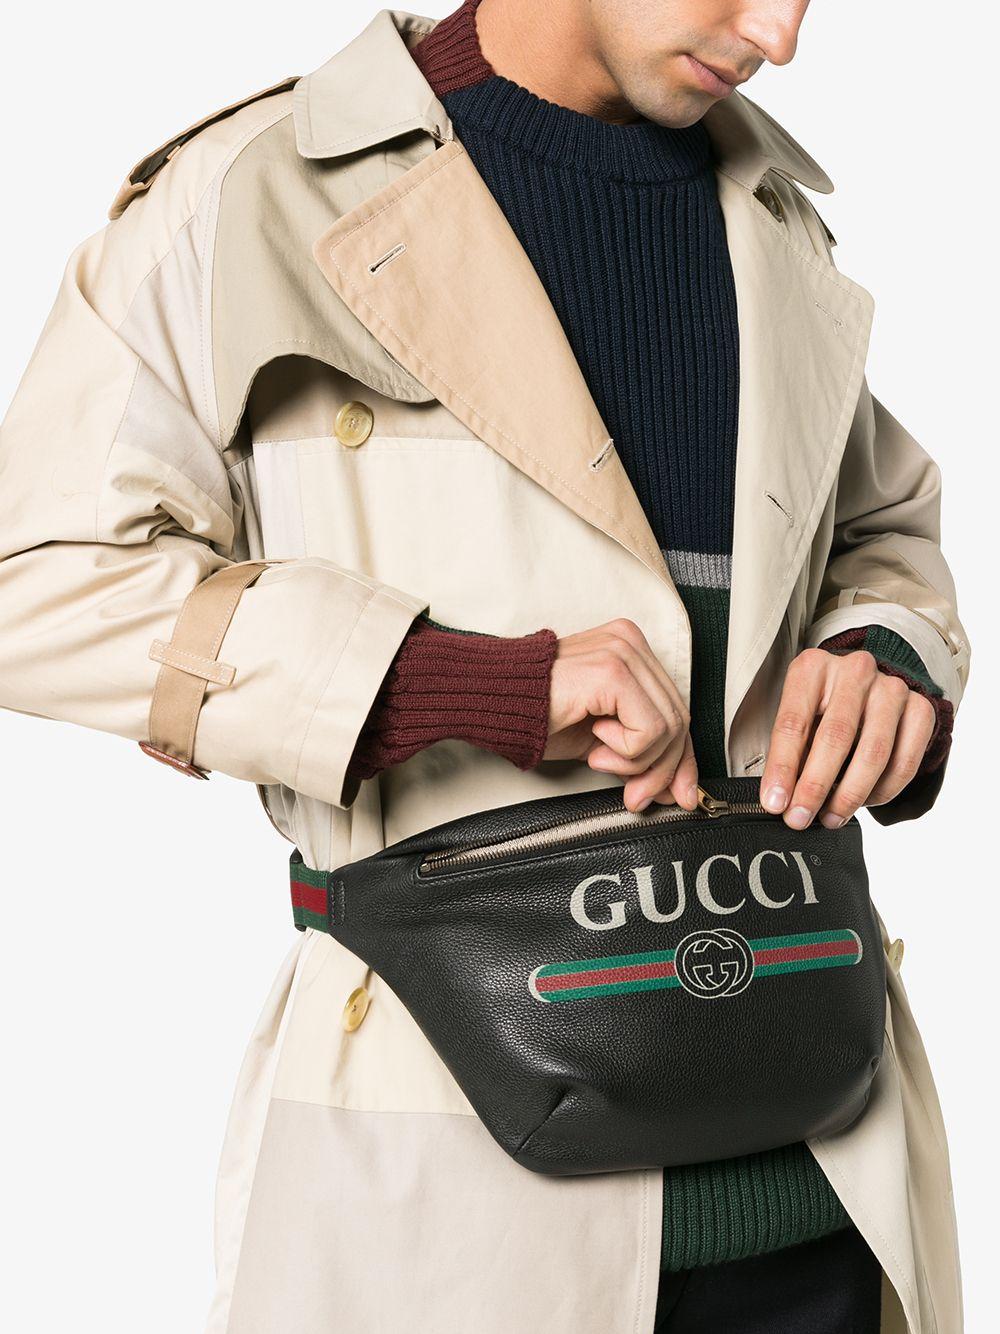 gucci belt bag model